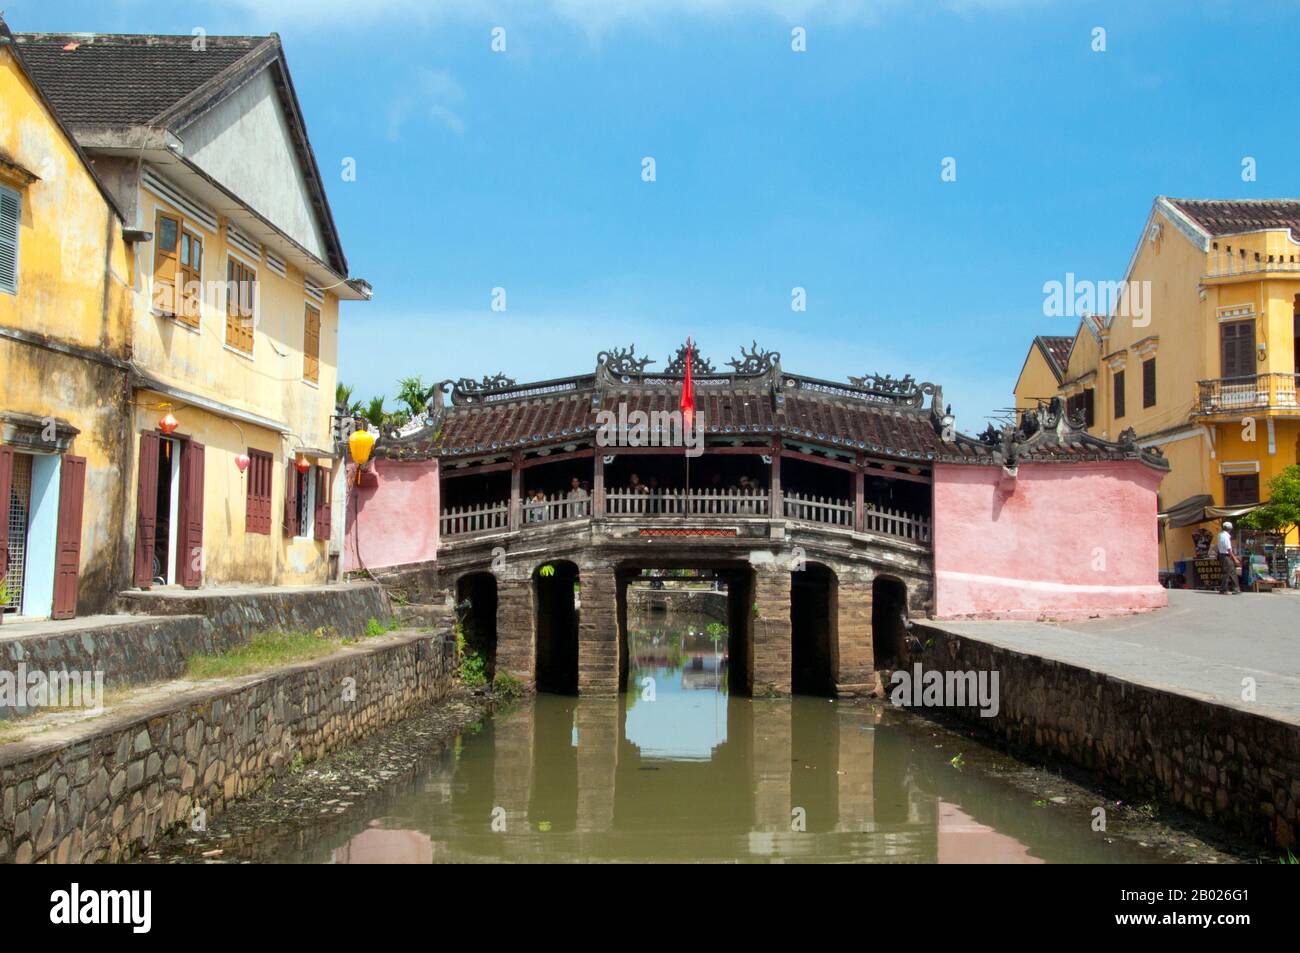 Vietnam : le pont couvert japonais, Hoi an. Le pont couvert japonais est un symbole de Hoi an et de son riche passé mercantile. Le pont a été construit en 1593 par la communauté commerciale japonaise pour les relier au quartier chinois plus à l'est. La petite ville historique de Hoi an est située sur la Thu bon River 30km (18 miles) au sud de Danang. Au temps des Lords Nguyen (1558 - 1777) et même sous les premiers Emperors Nguyen, Hoi an, alors connu sous le nom de Faifo, était un port important, visité régulièrement par des navires de l'Europe et de l'est. Banque D'Images